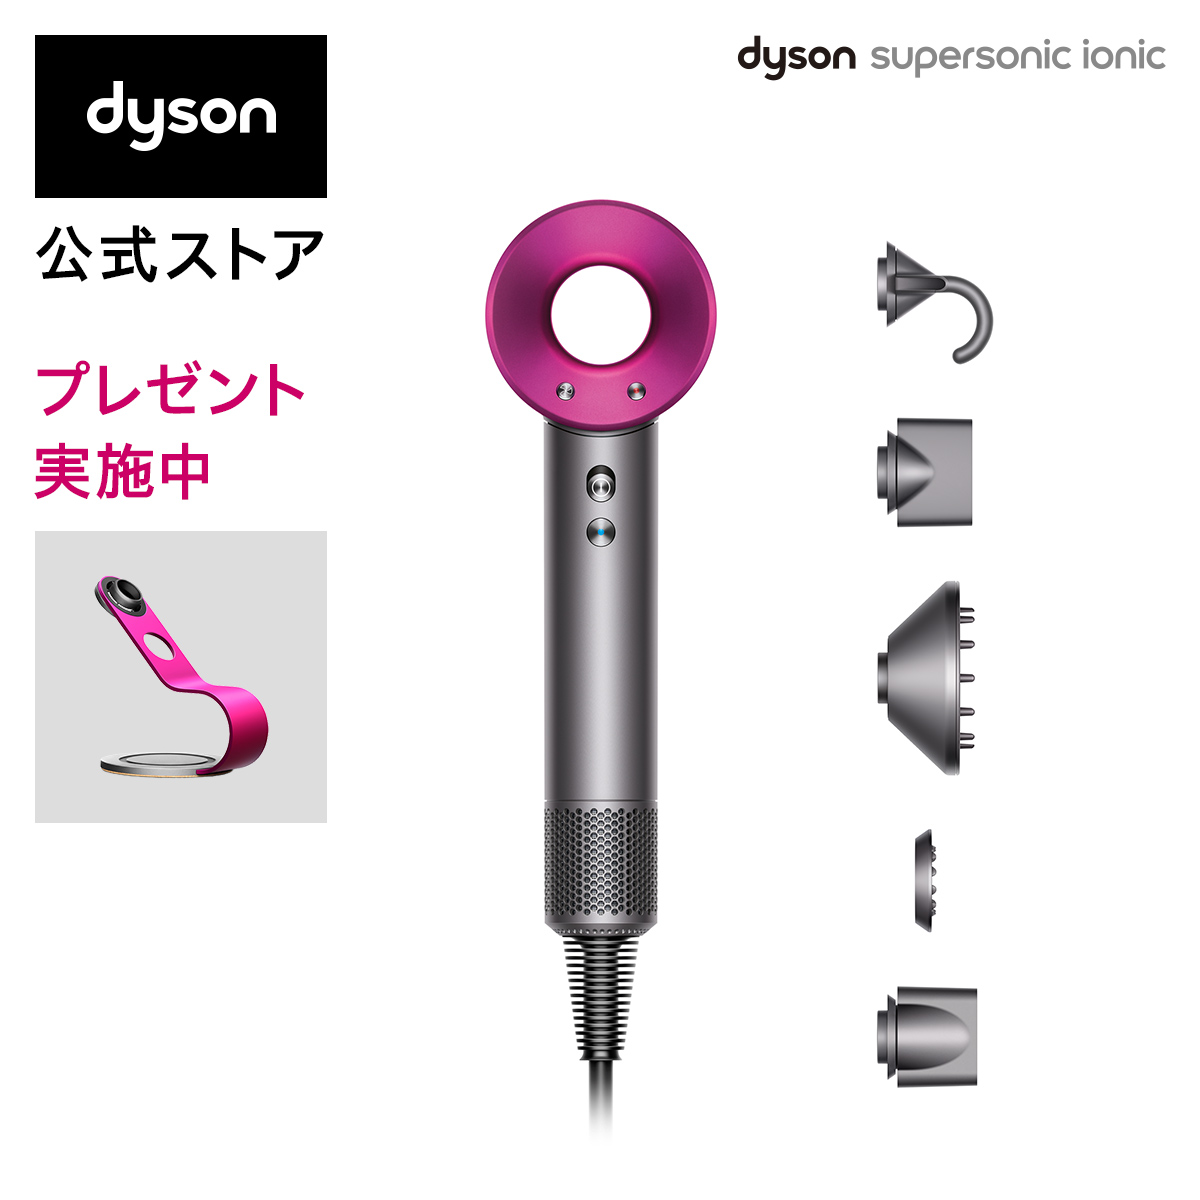 dyson HD08 ULF IIF N PINK 新品美容/健康【T-ポイント5倍】 ダイソン